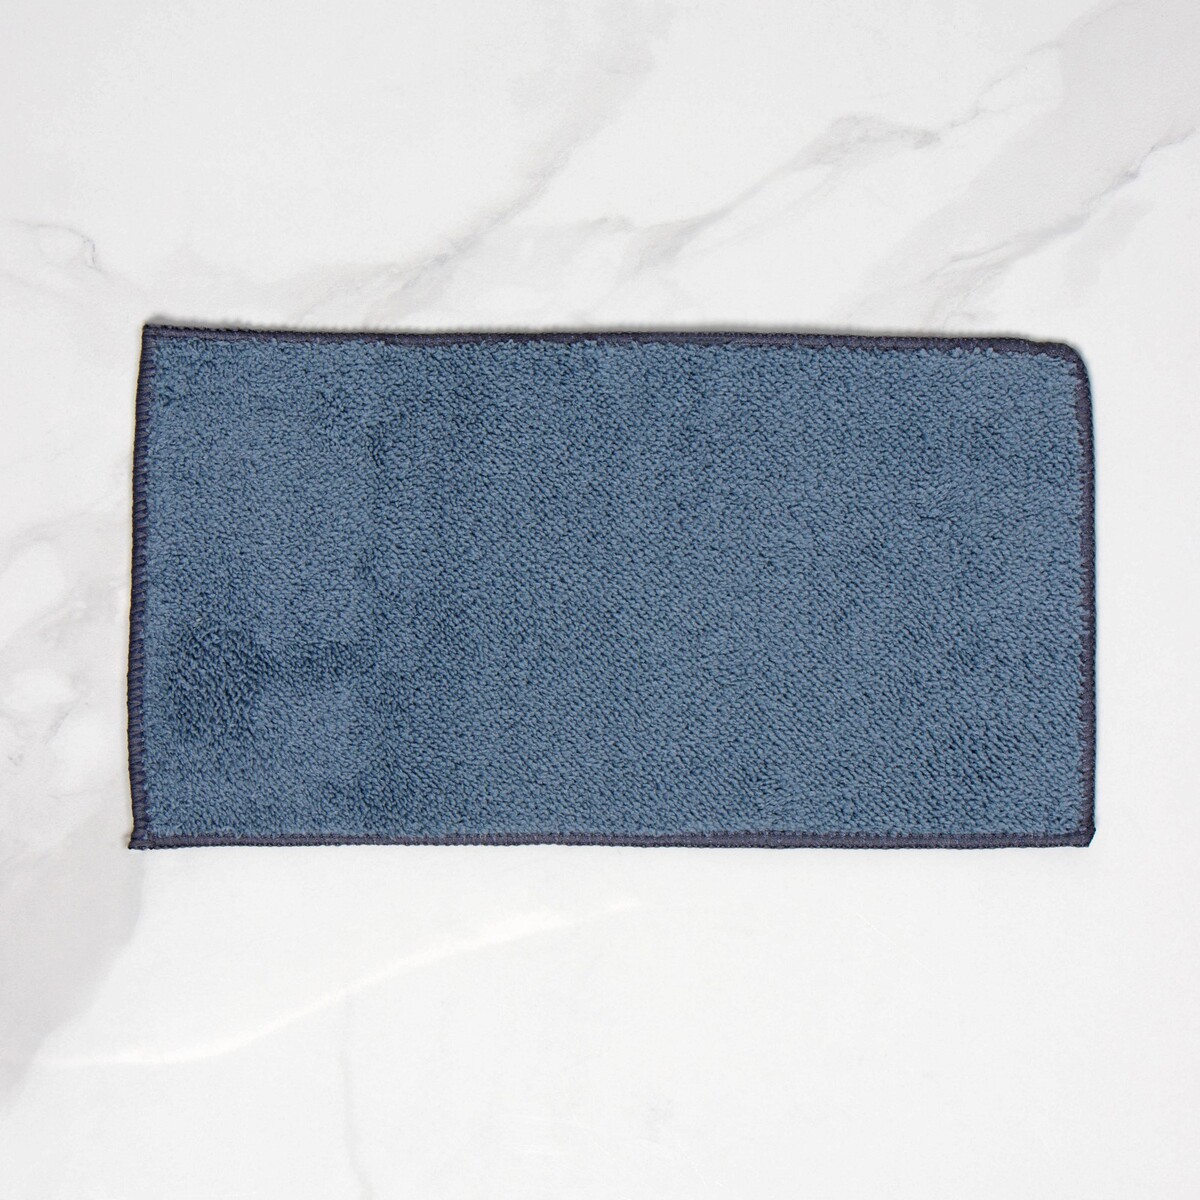 Насадка для окномойки raccoon, микрофибра, 27×7 см, цвет синий насадка для плоской швабры доляна 42×12 см 60 гр микрофибра синий